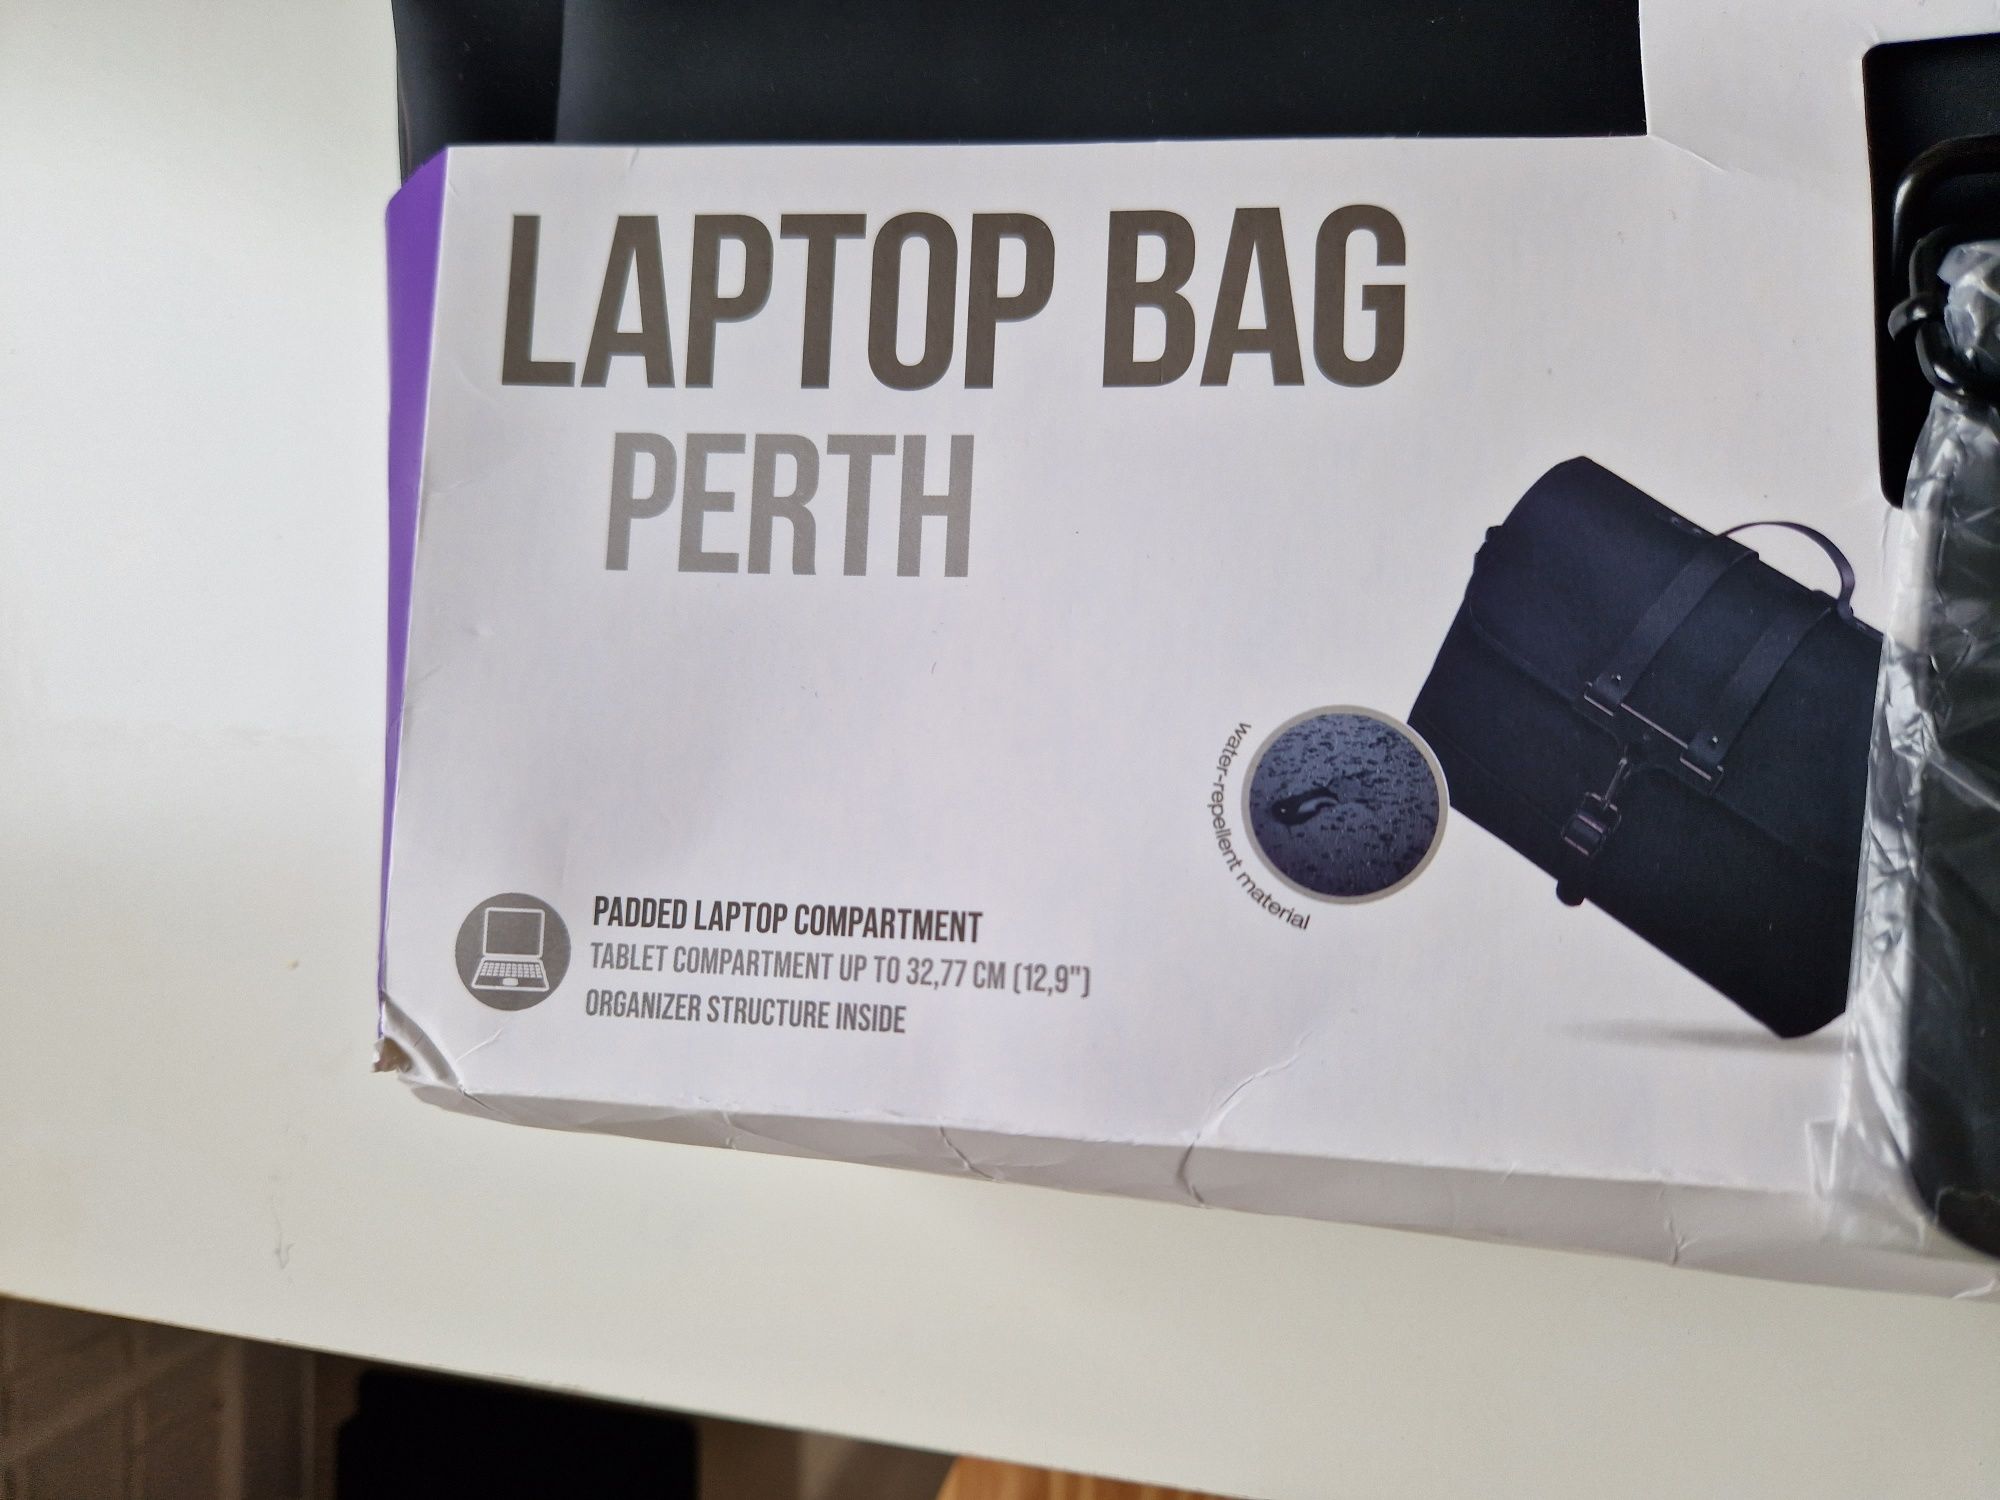 Torba na laptopa Hama Perth 15.6 nowa